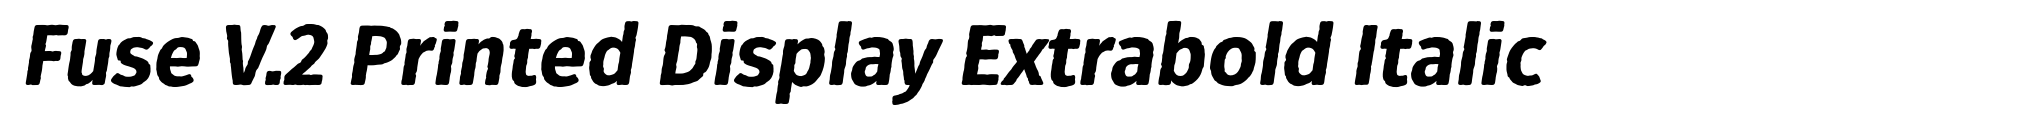 Fuse V.2 Printed Display Extrabold Italic image